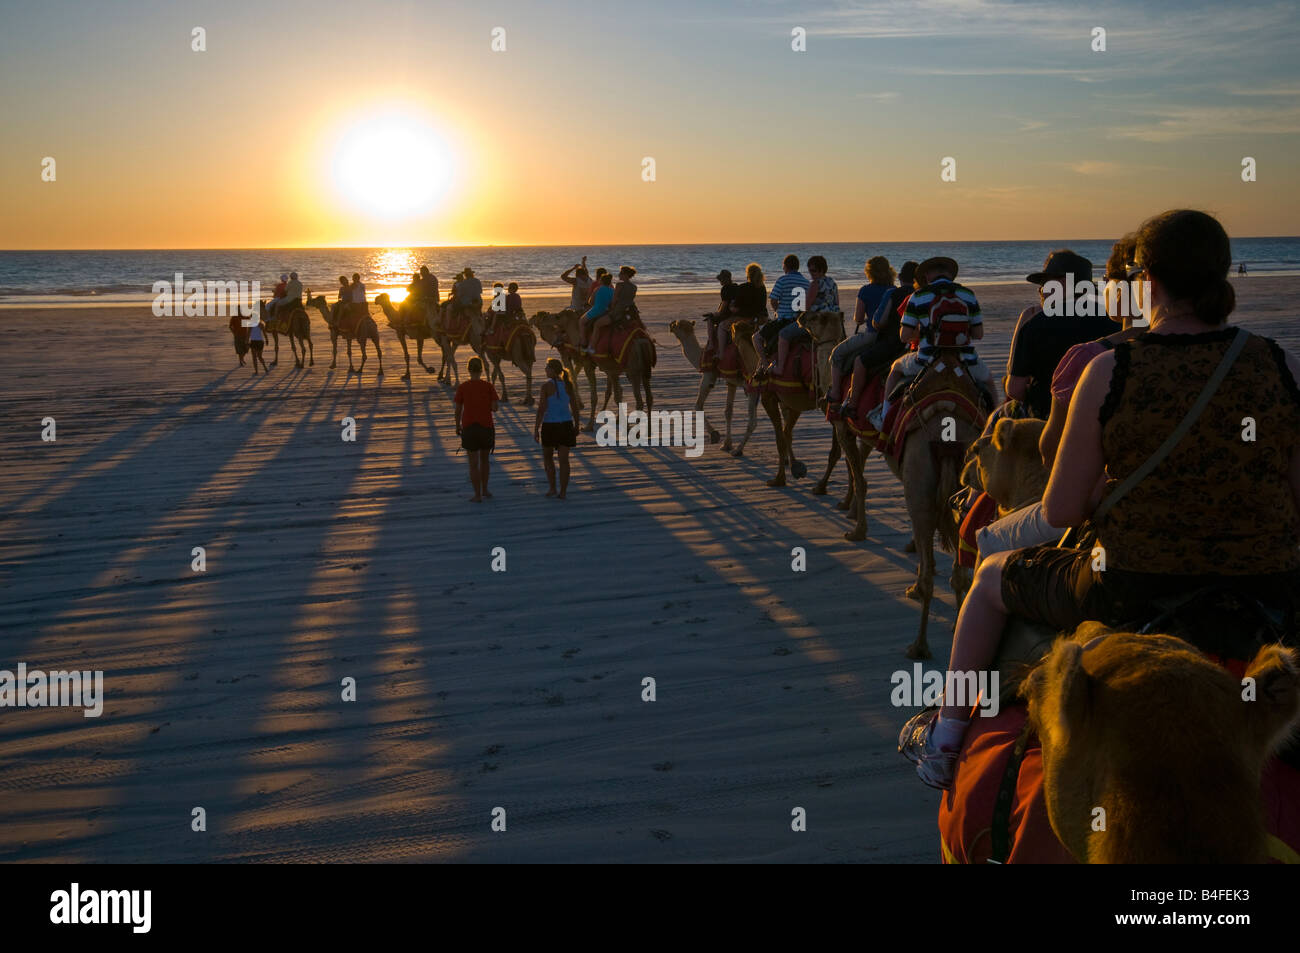 L'équitation de chameau au coucher du soleil sur la plage Cable Broome Australie Occidentale Banque D'Images